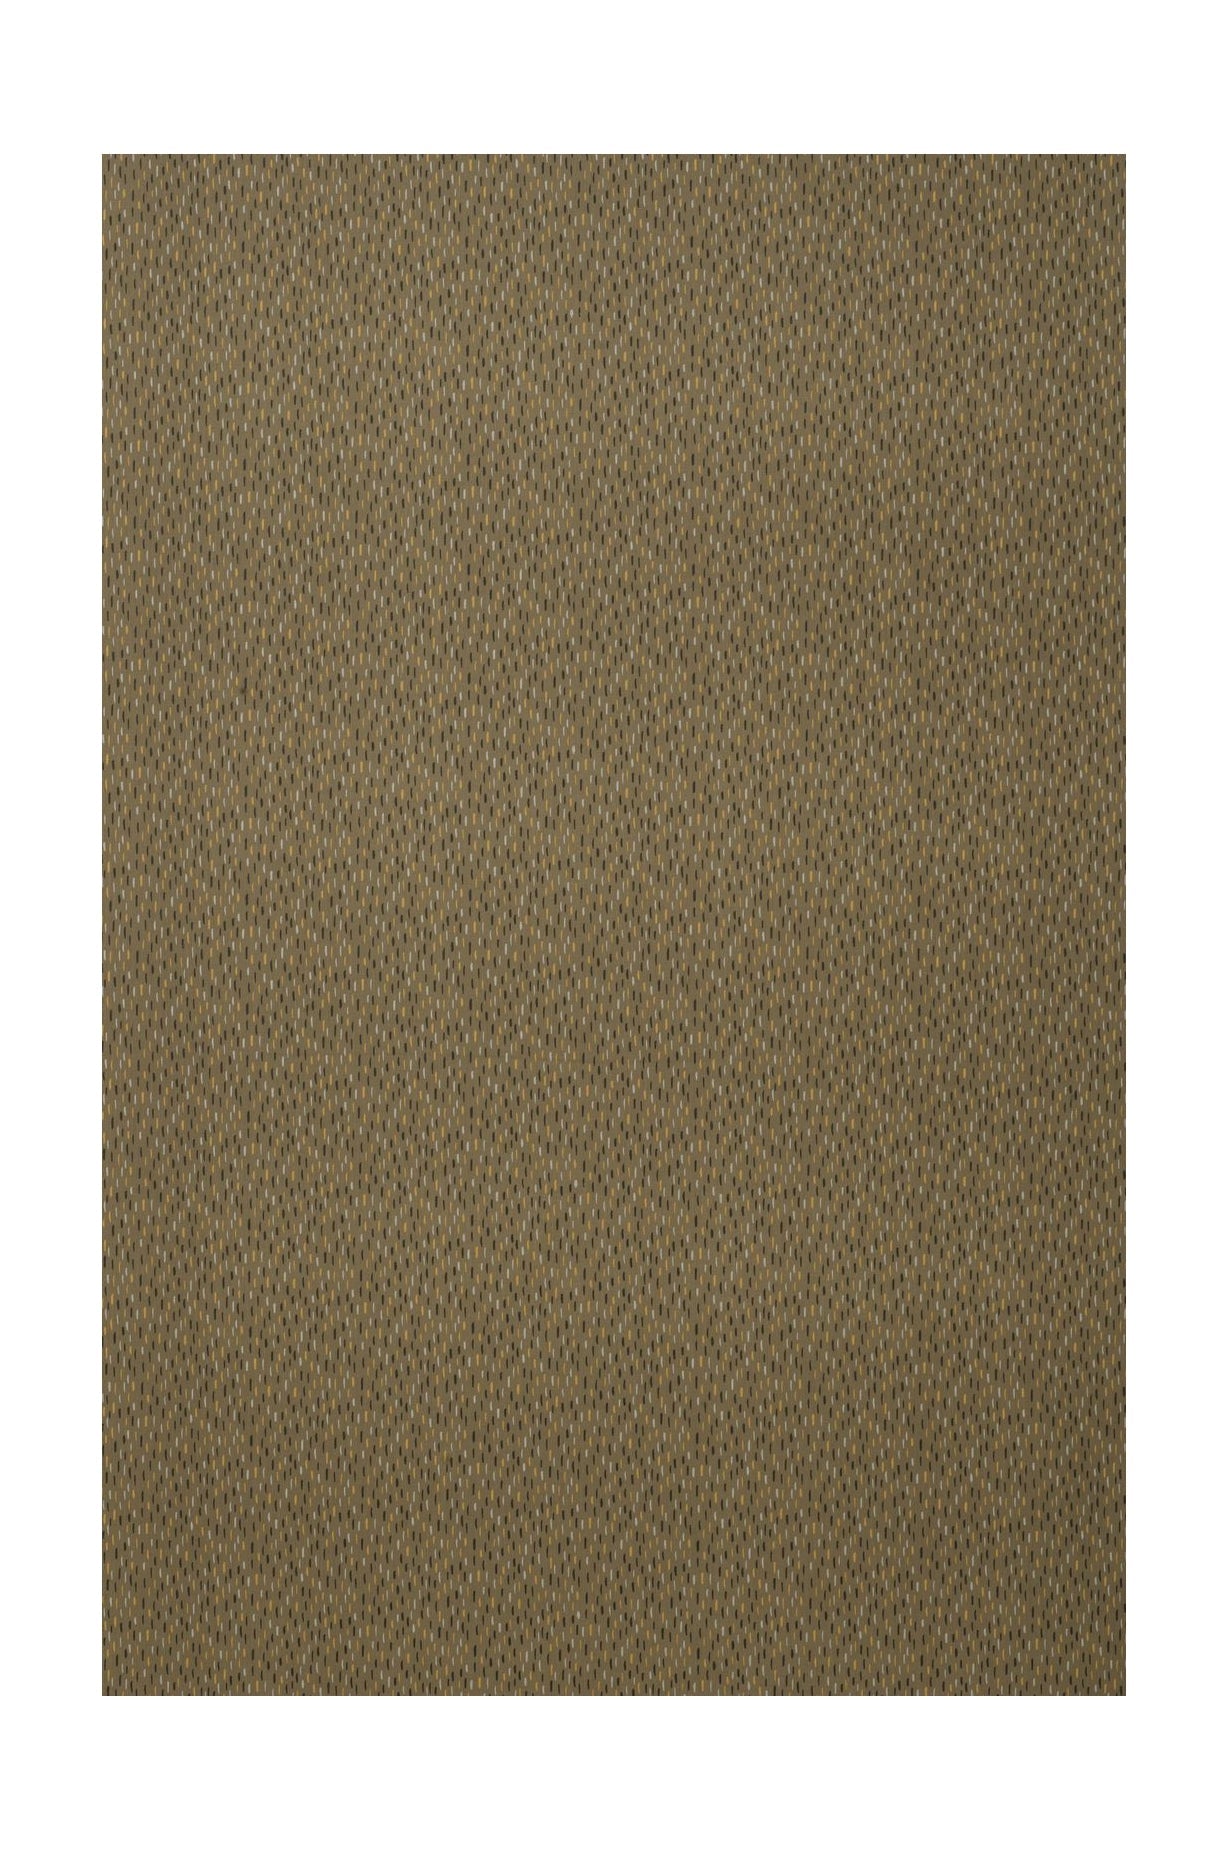 Szerokość tkaniny Spira Art 150 cm (cena za metr), brązowy